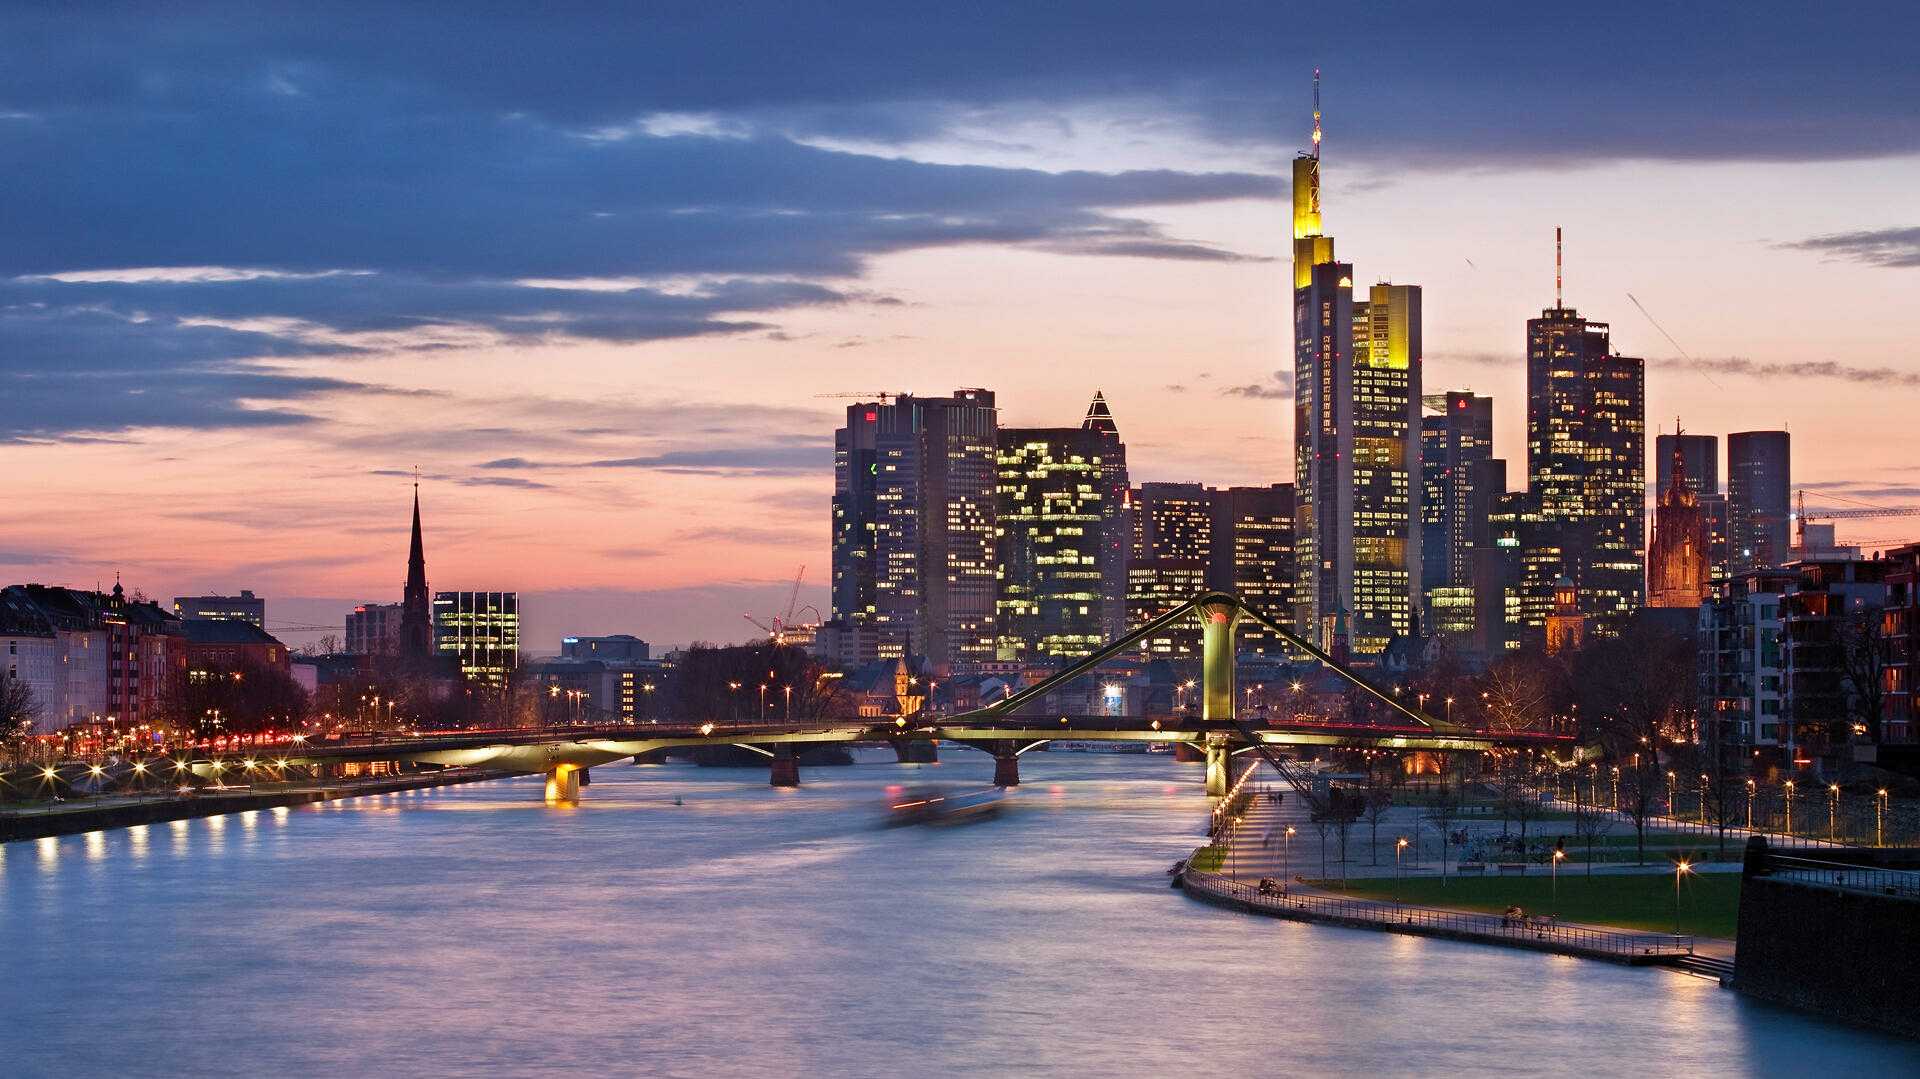 Ein Höhepunkt bei einer Städtereise nach Frankfurt ist ein Spaziergang in der blauen Stunde über die Deutschherrenbrücke. Von dort hat man eine besonders schöne Sicht auf die Skyline. , 